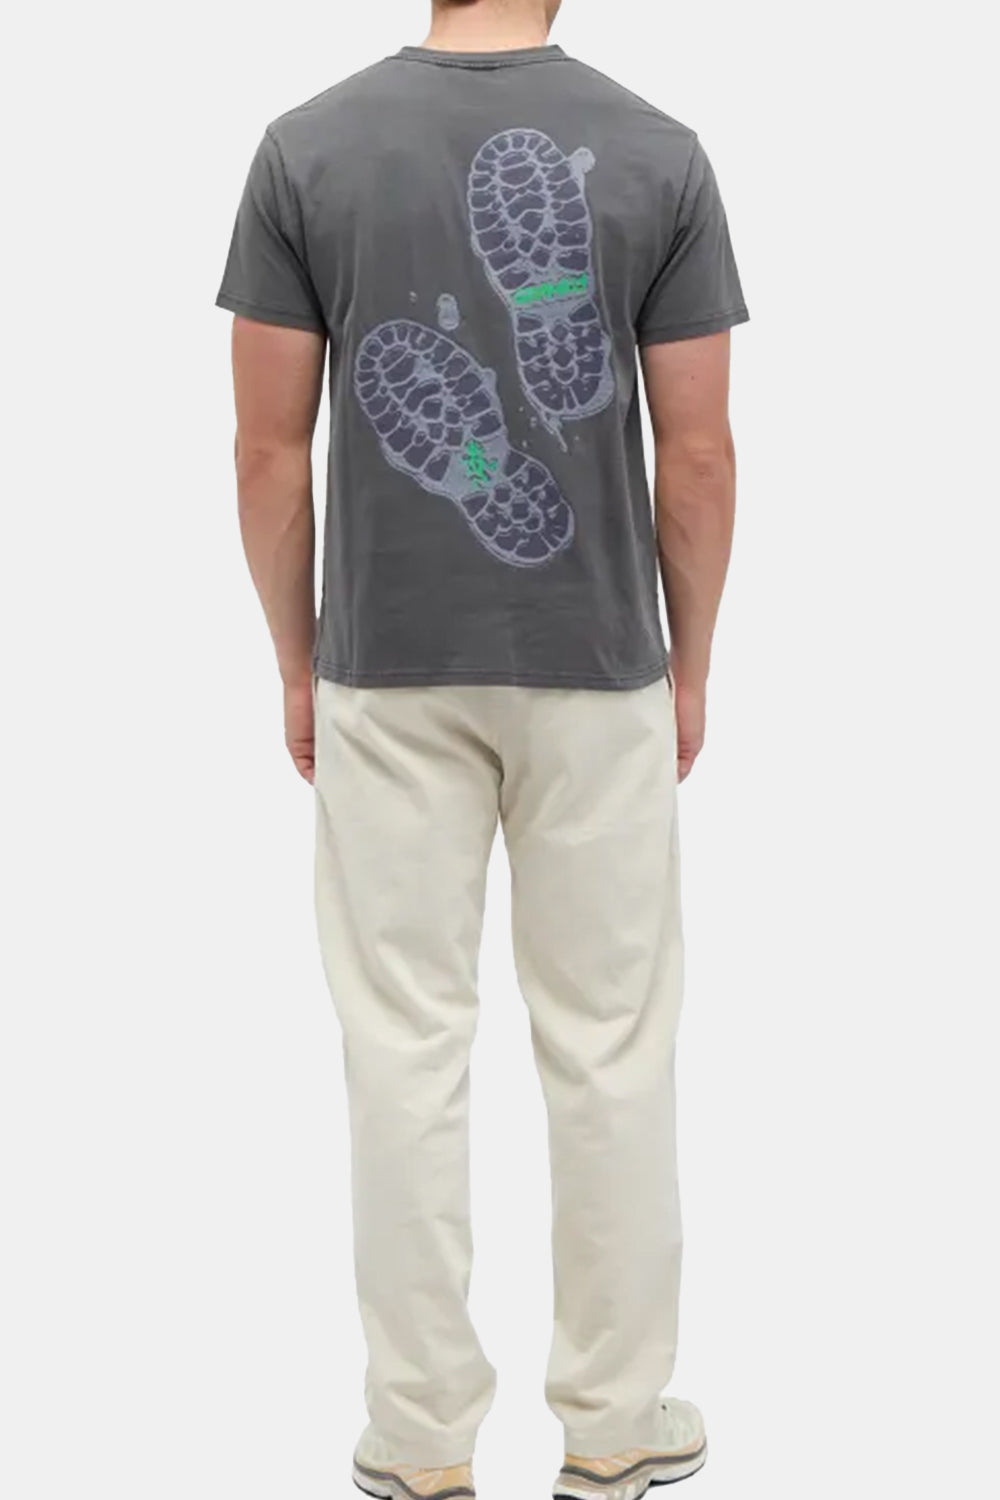 Gramicci Footprints T-Shirt (Grey Pigment)